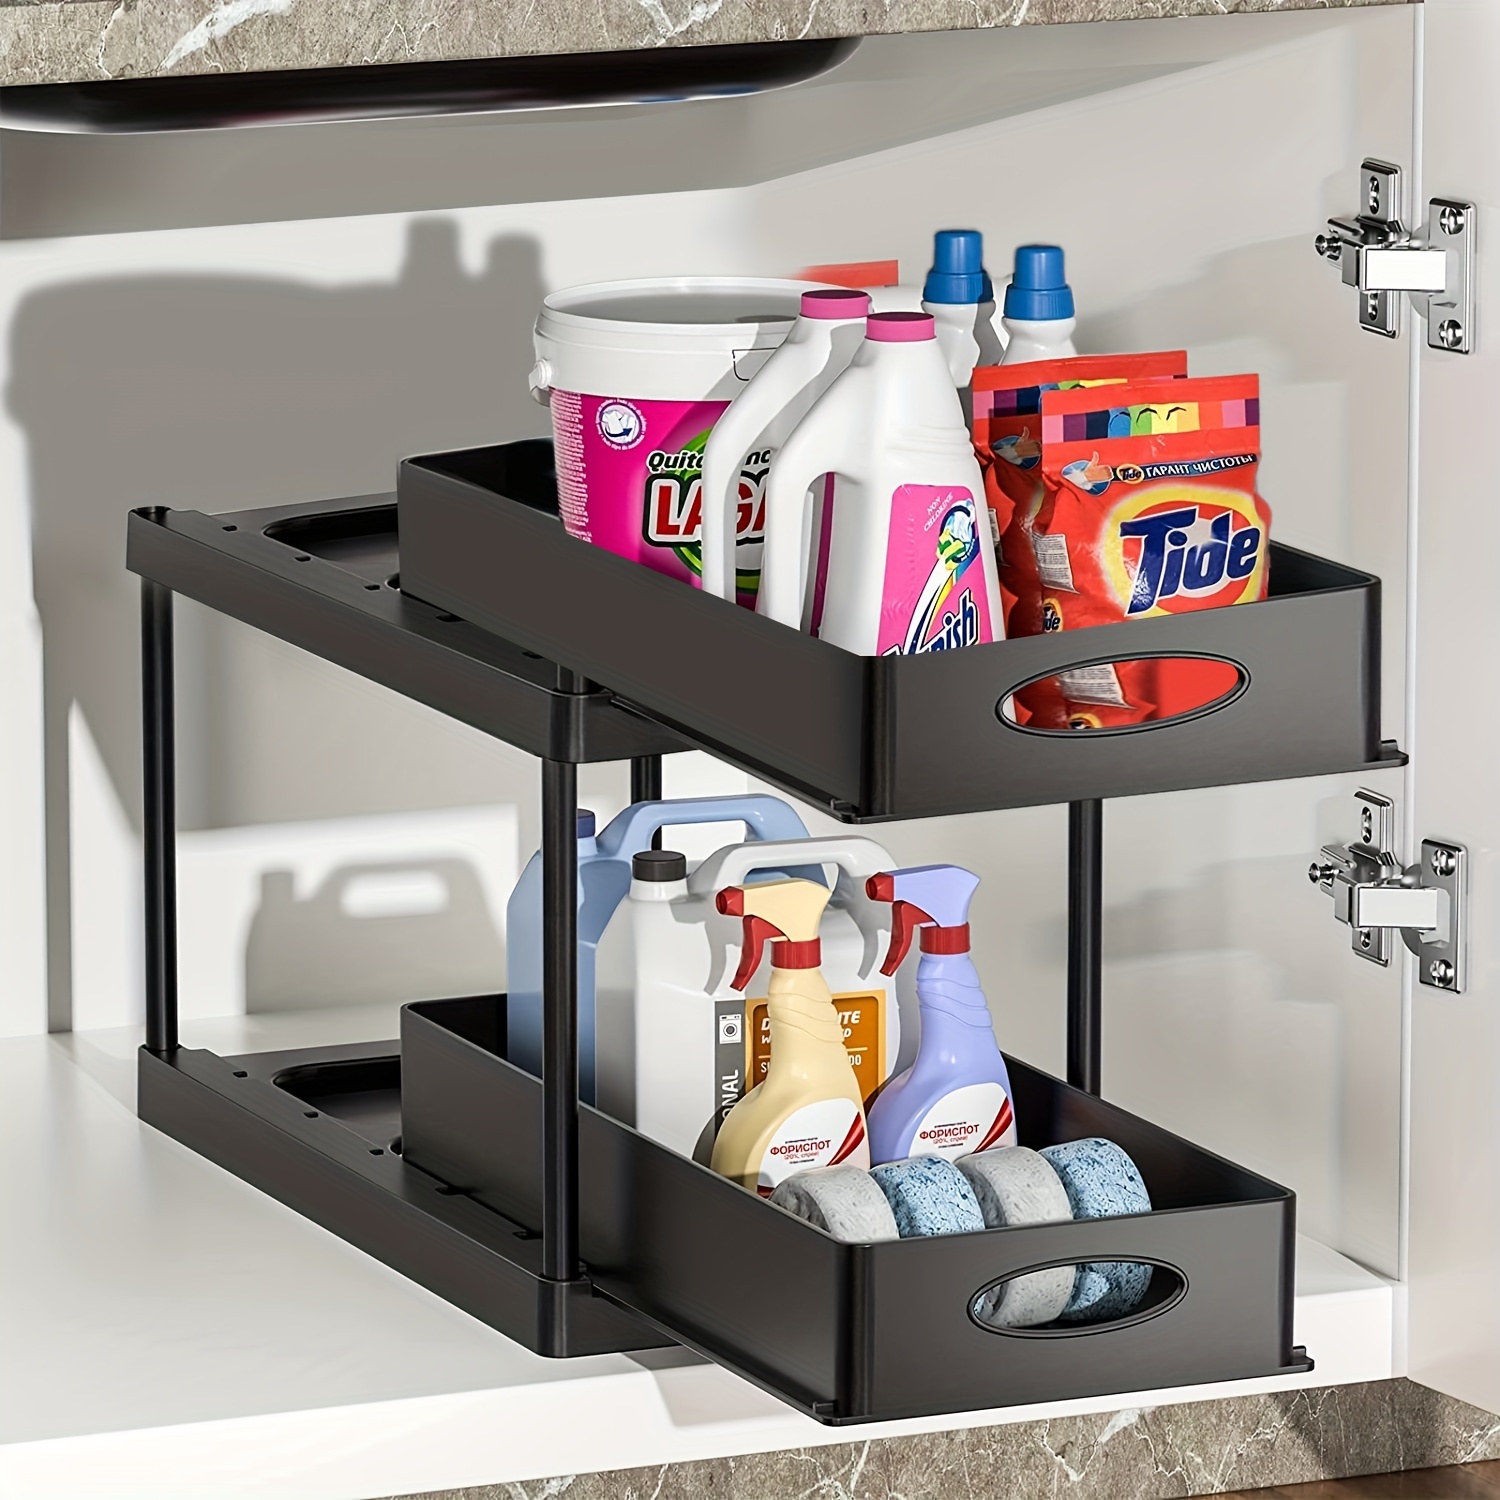 2 Tier Under Sink Shelf Organizers Storage Pull Out Bathroom Cabinet Storage